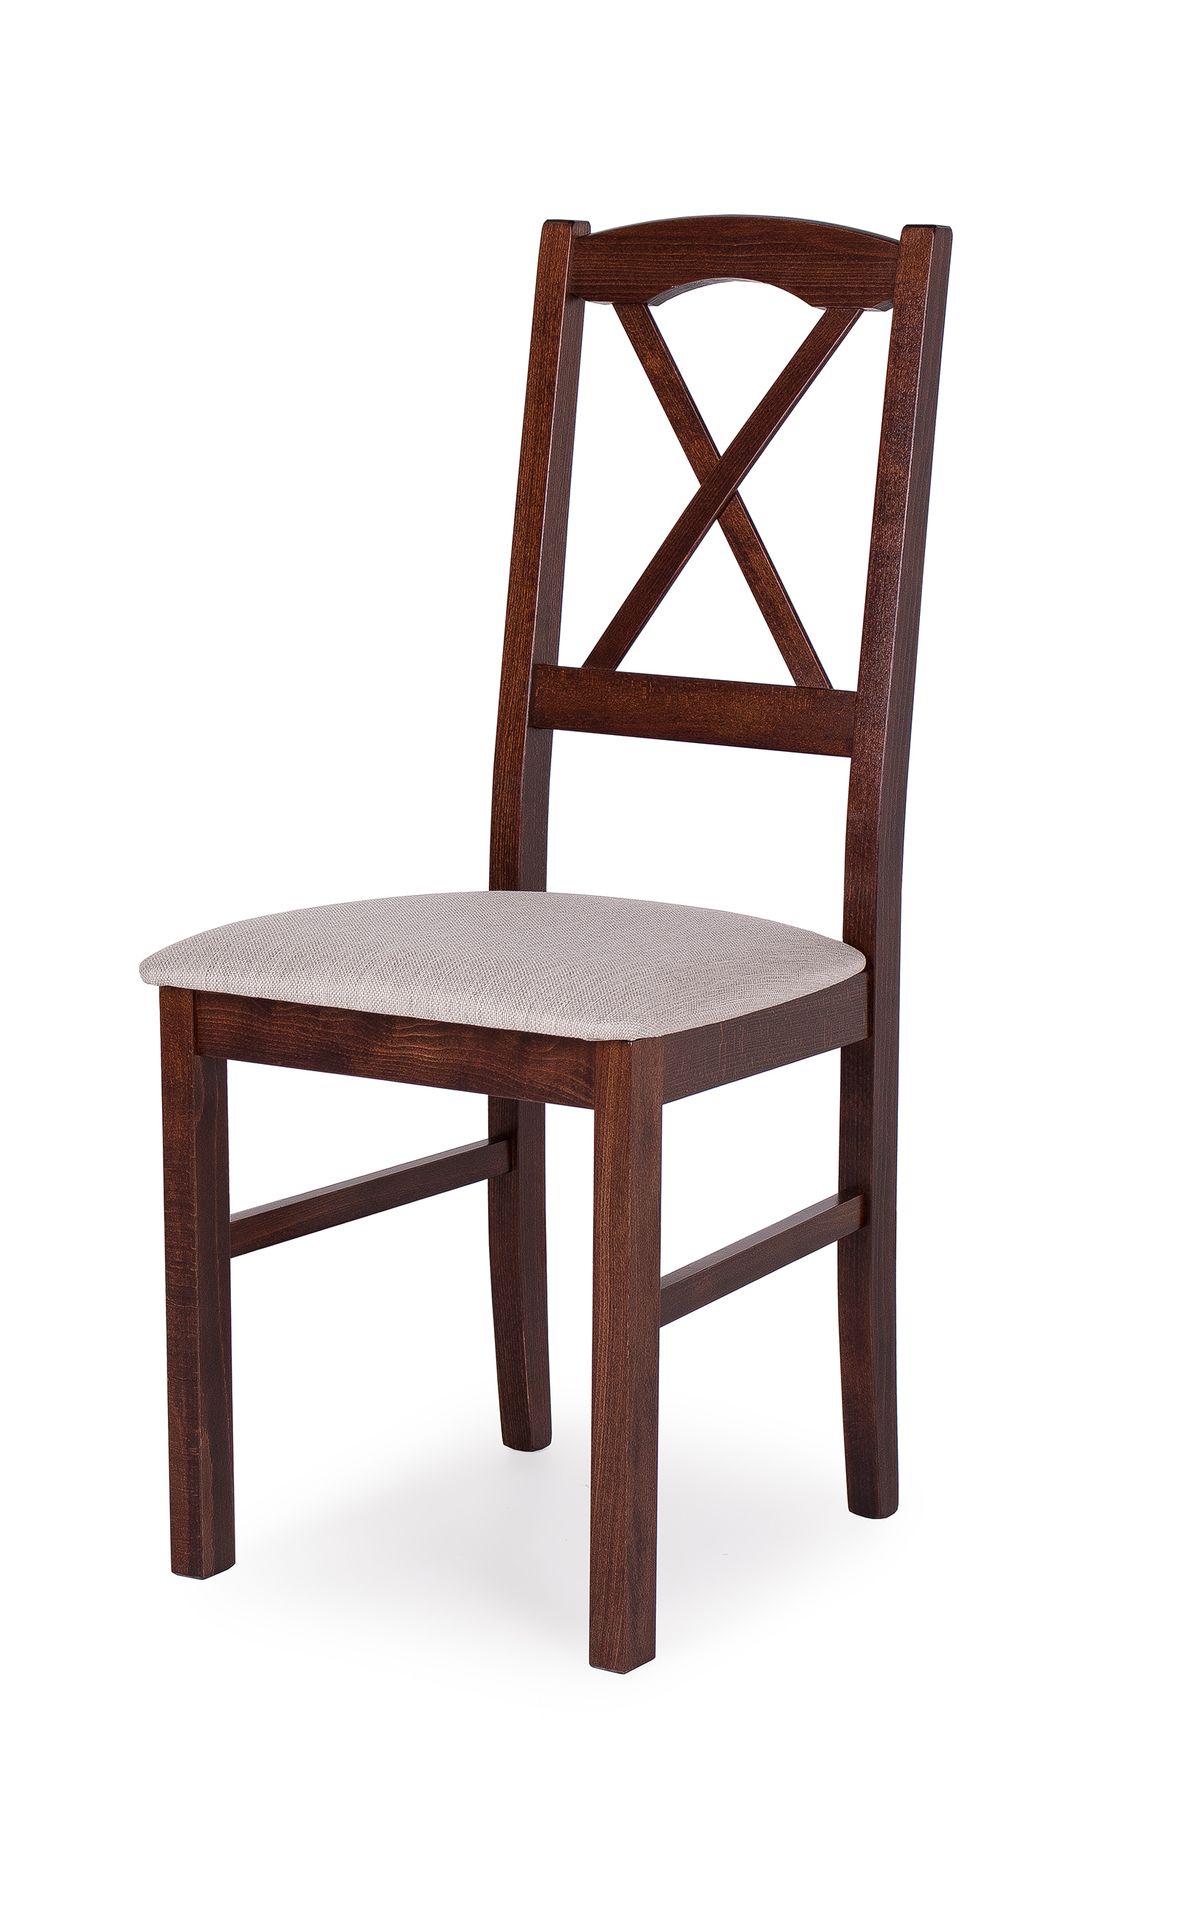 Niló szék